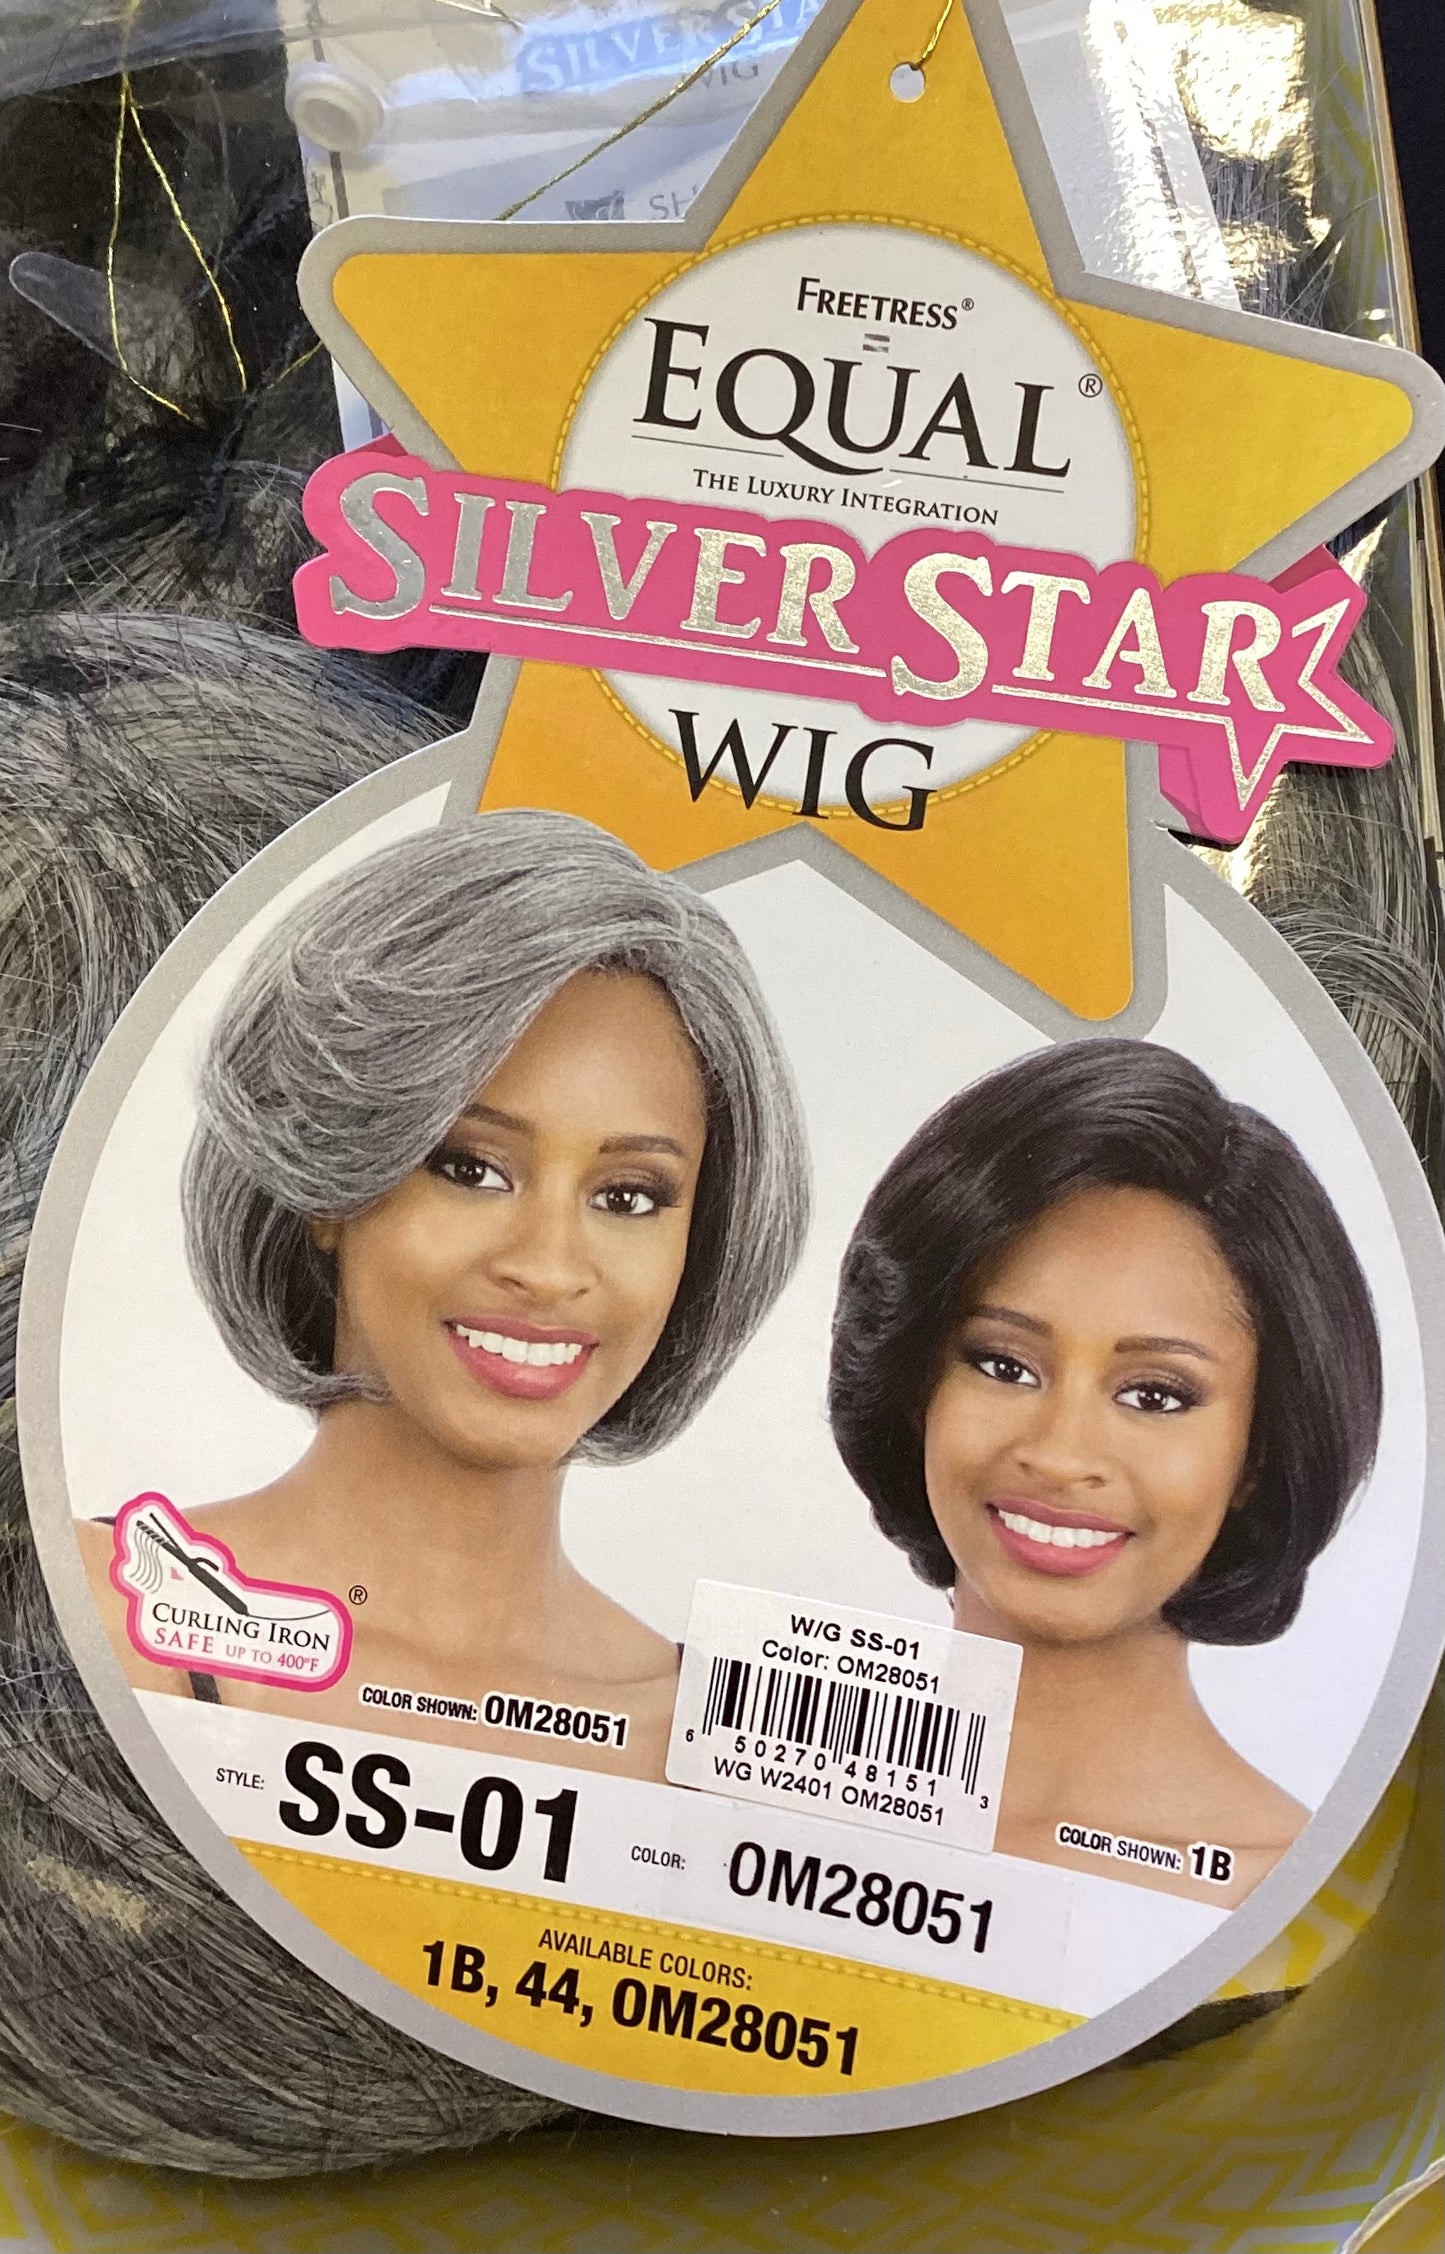 Silver Star Wig Color OM28051